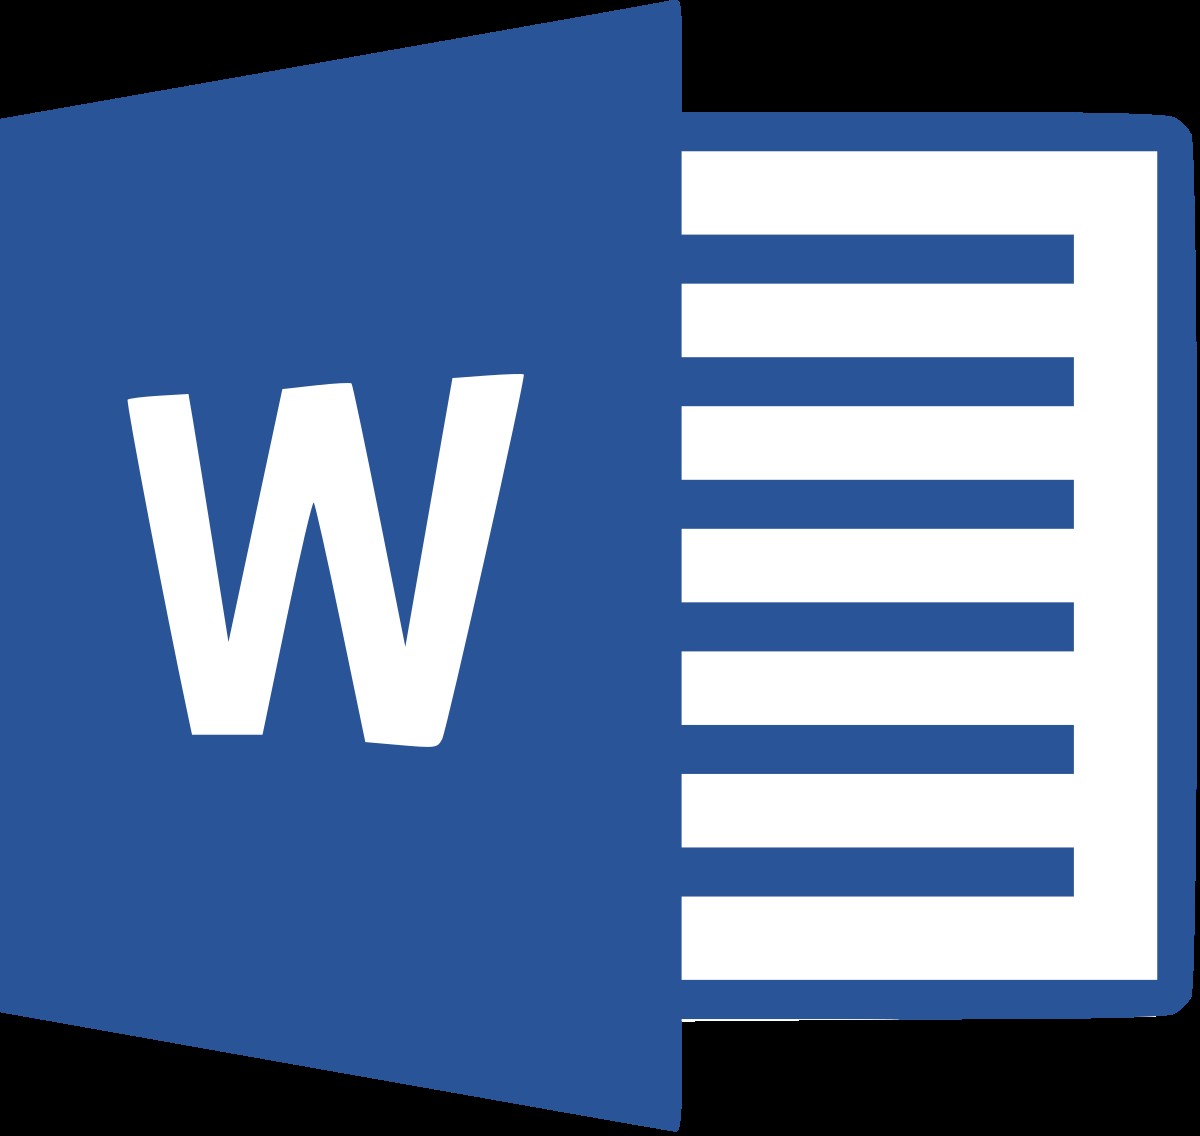 แก้ไข:Microsoft Word 2016 หรือ 2013 จะไม่เปิดใน Windows 10 